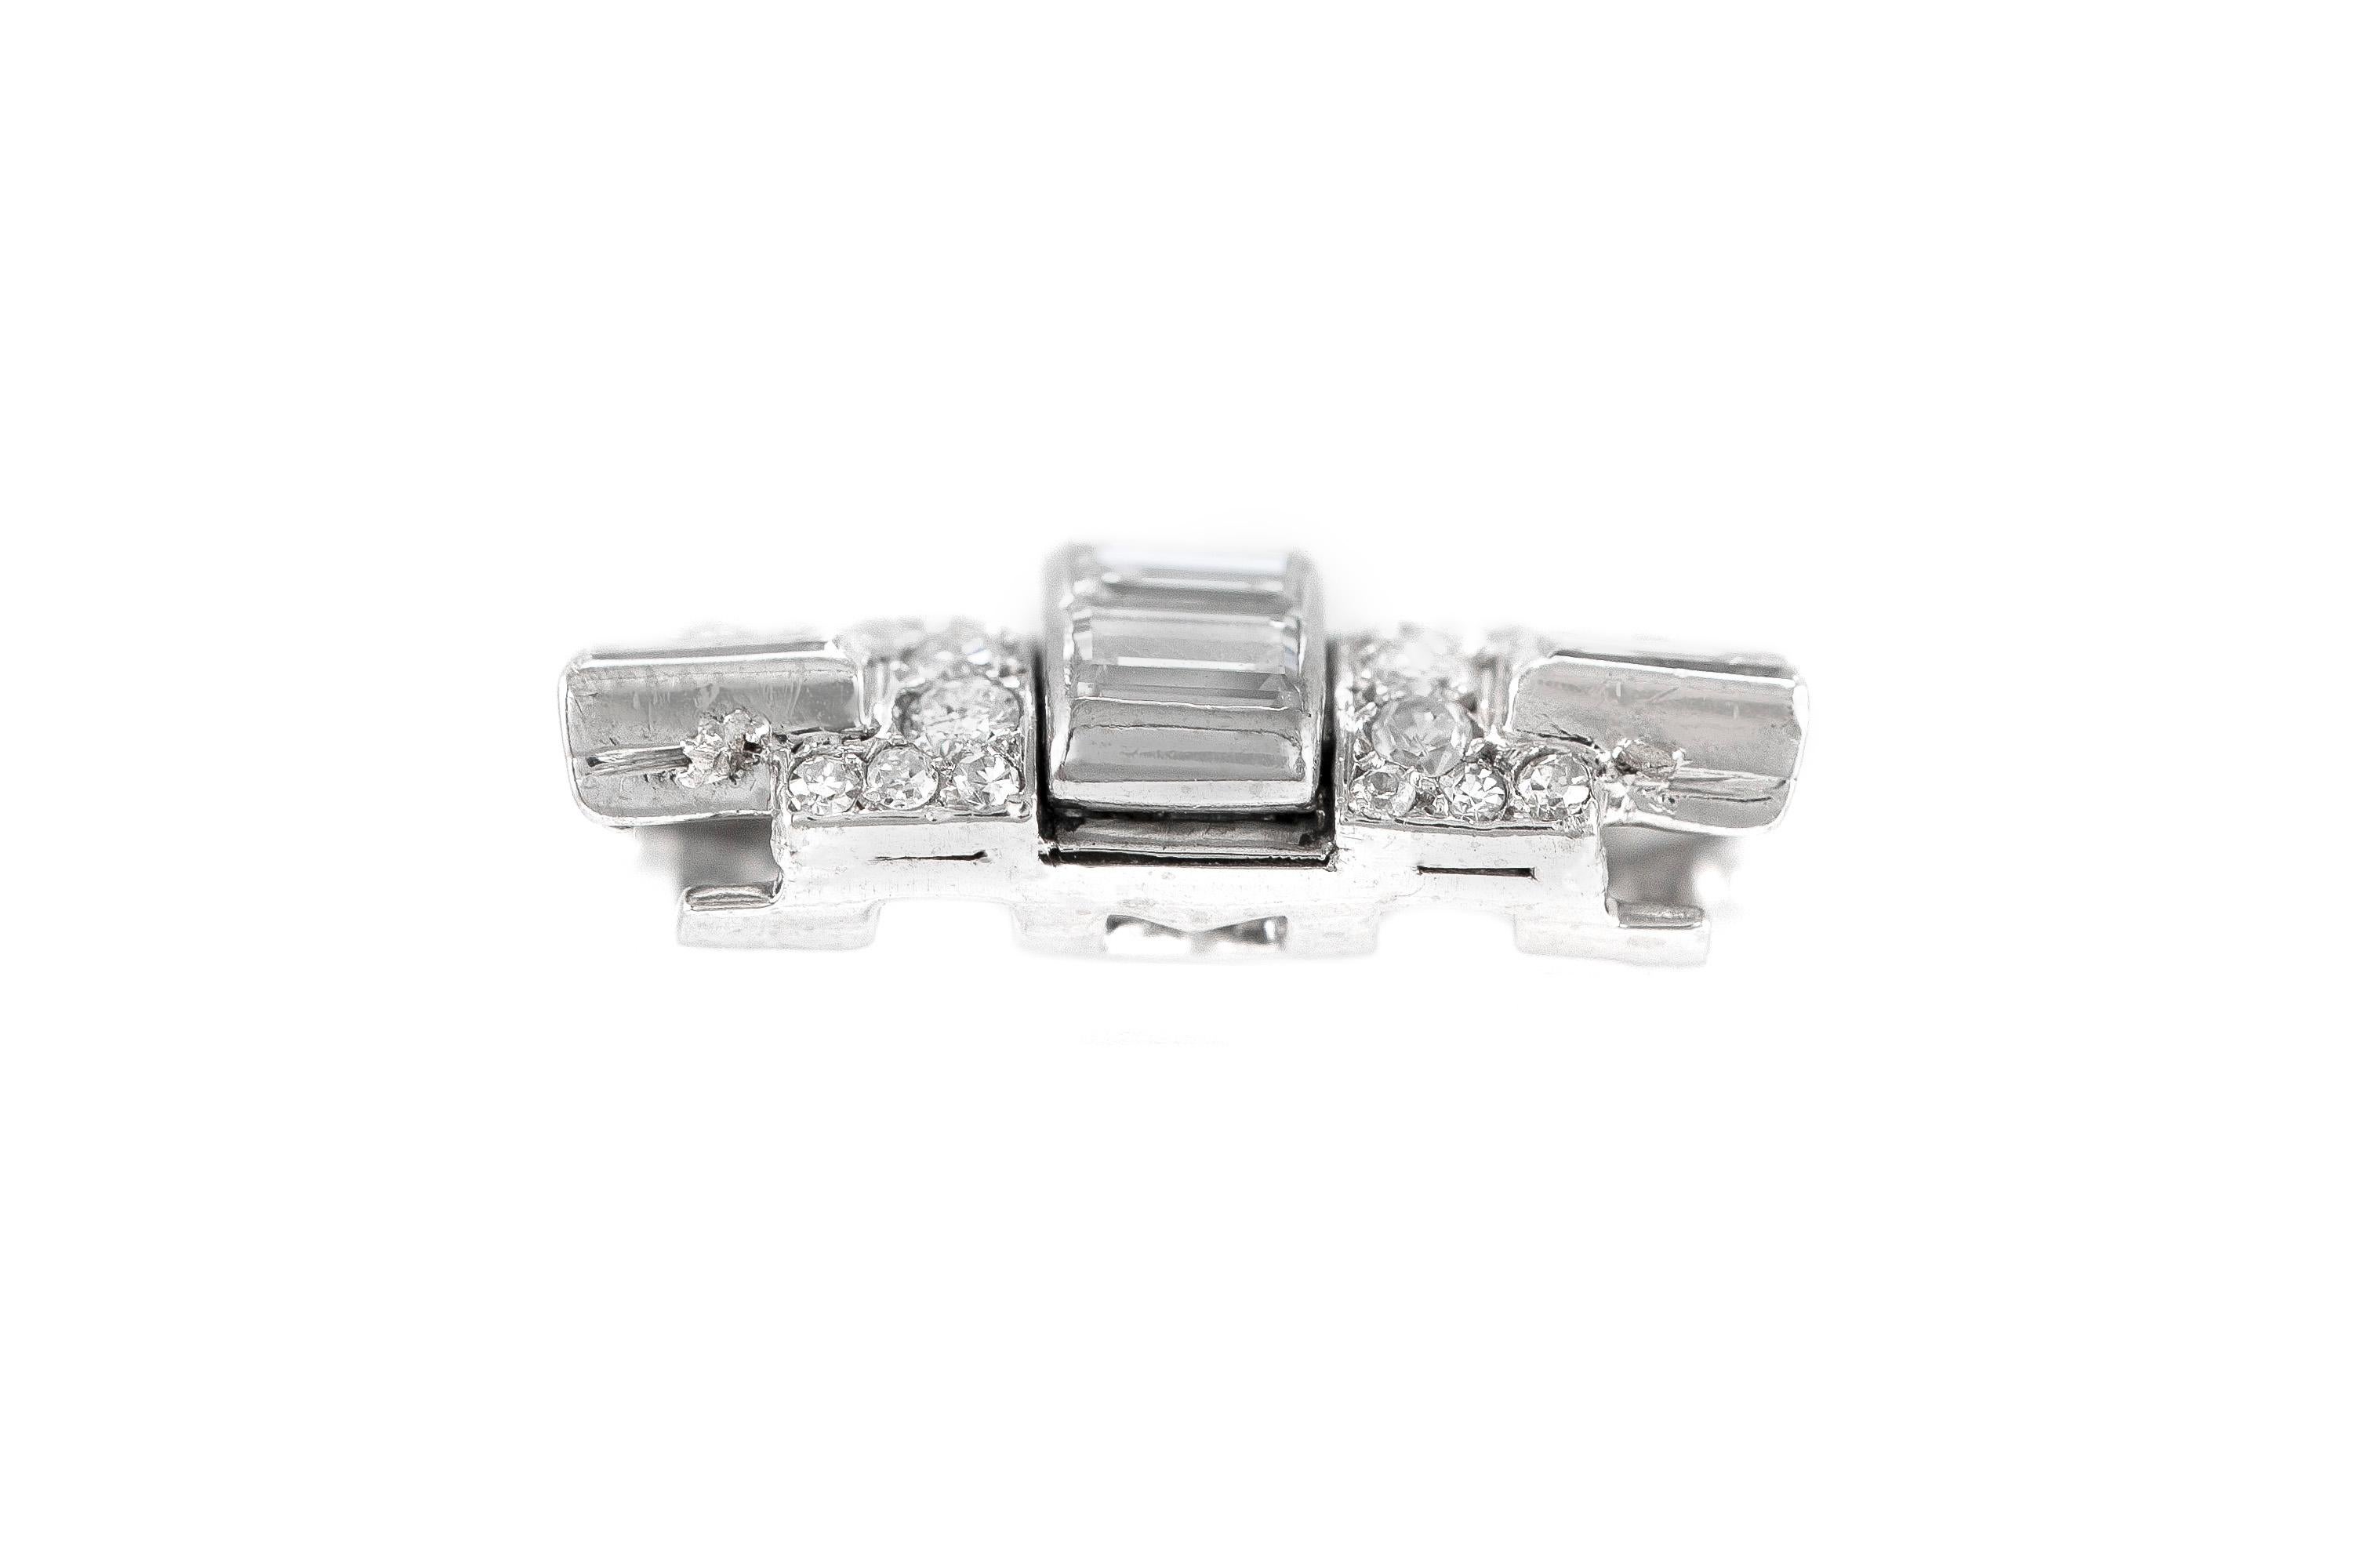 Der Doppelclip ist aus Platin gefertigt und mit Diamanten mit einem Gesamtgewicht von ca. 3,50 Karat besetzt.
Farbe  F-G 
Klarheit VS.
Um 1930.
